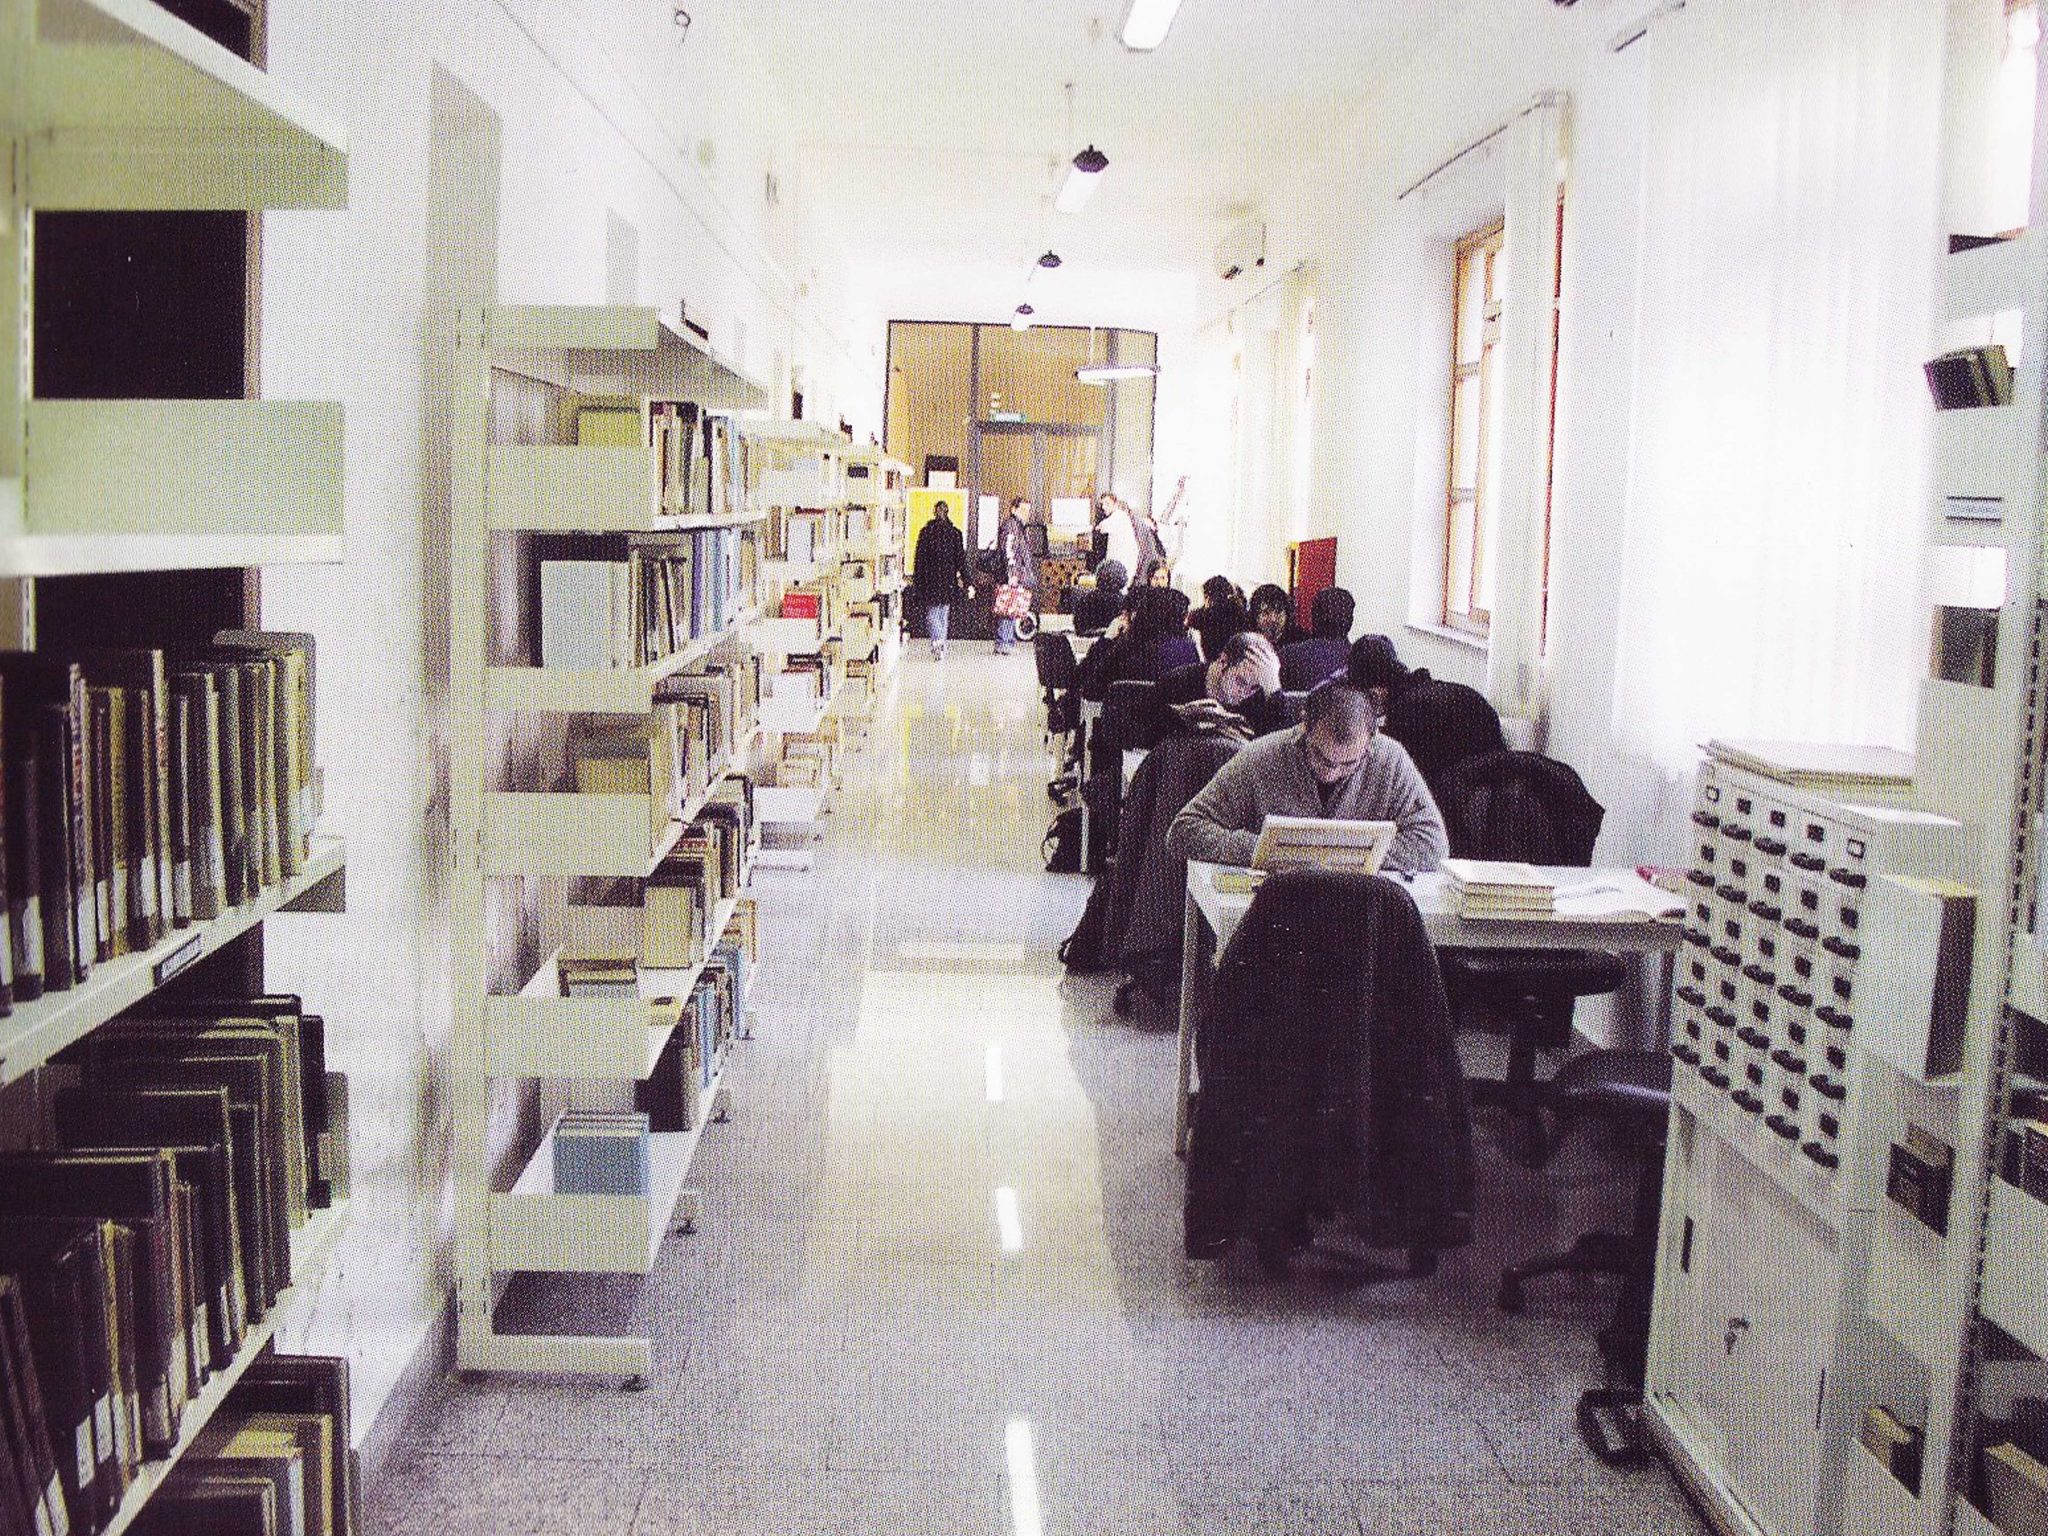 Biblioteca Comunale di Alghero negli anni 2000, presso le ex scuole gesuitiche, oggi sale espositive.